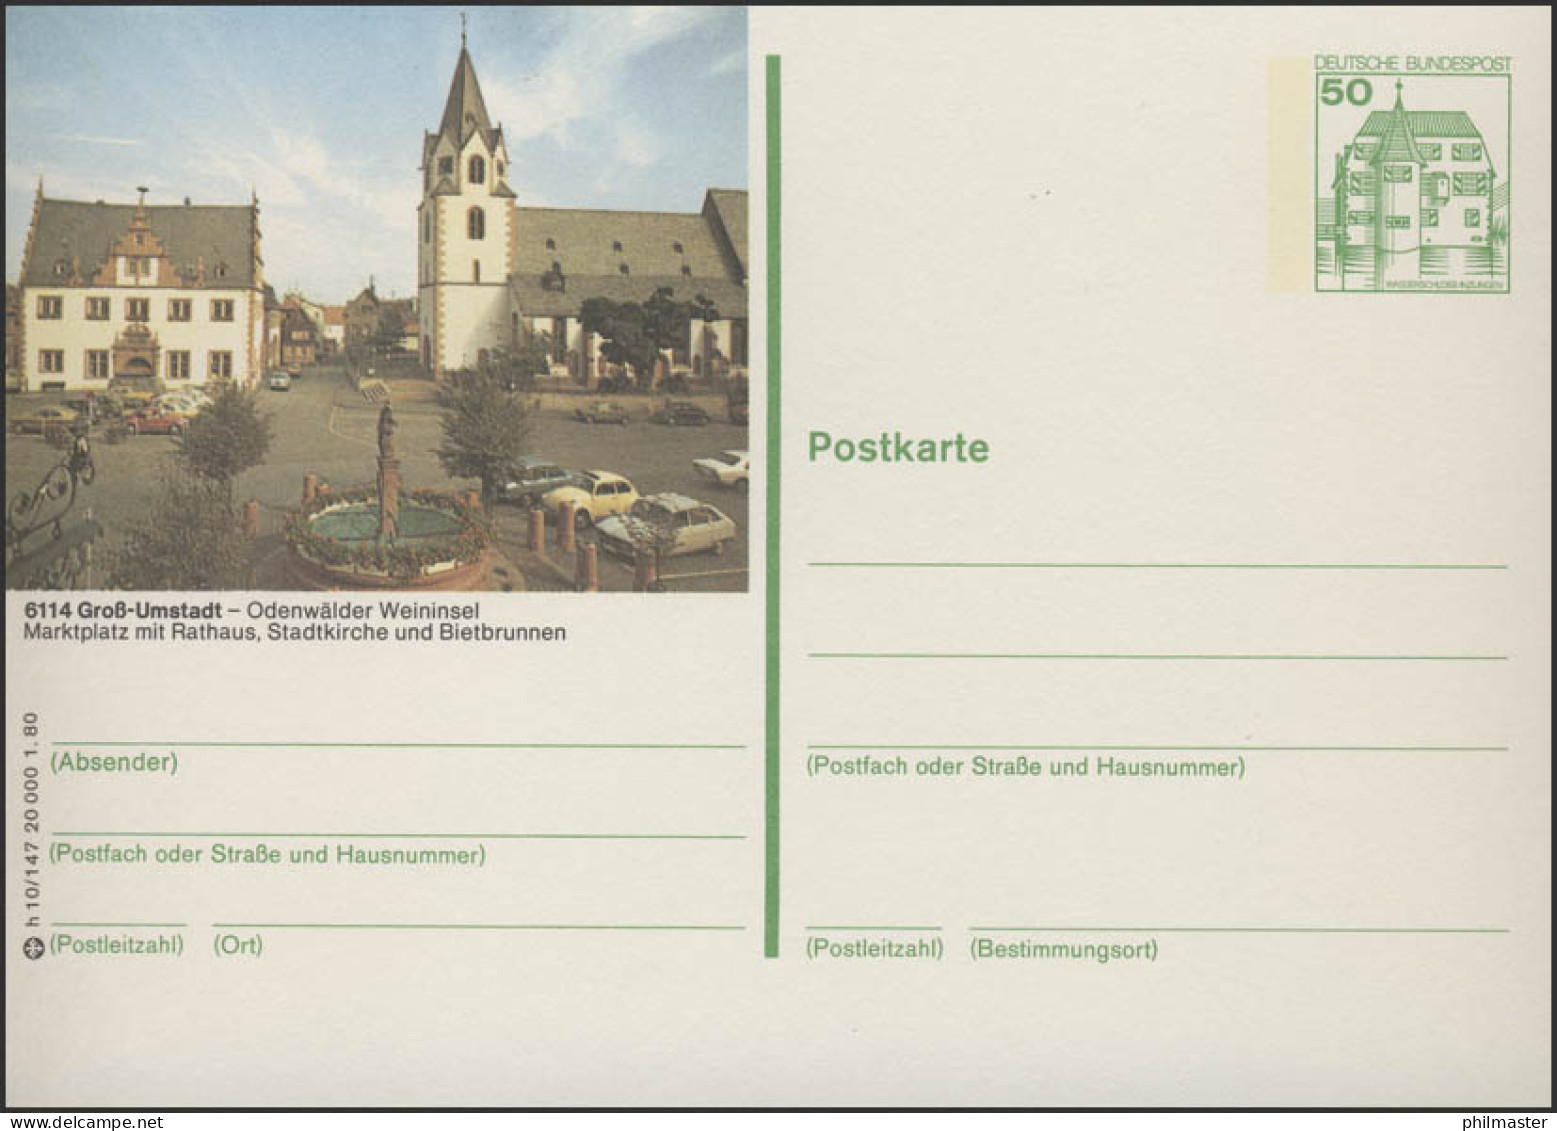 P130-h10/147 - 6114 Groß Umstadt - Marktplatz Rathaus ** - Geïllustreerde Postkaarten - Ongebruikt